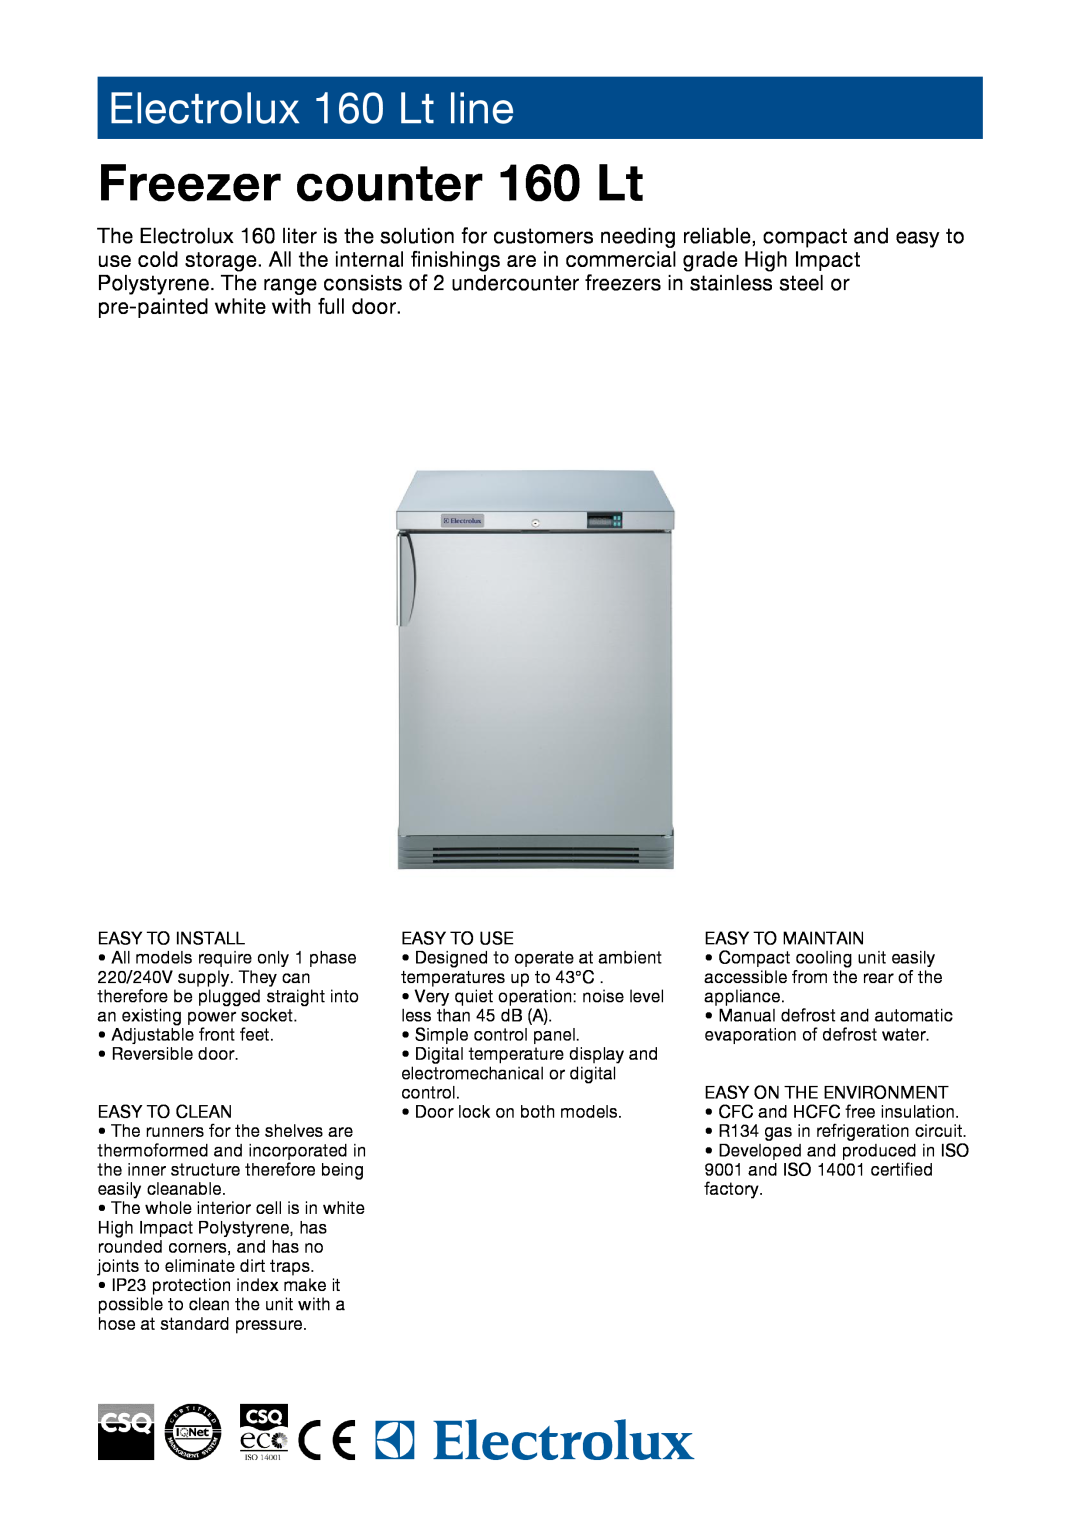 Electrolux 160 LT manual Freezer counter 160 Lt, Electrolux 160 Lt line 